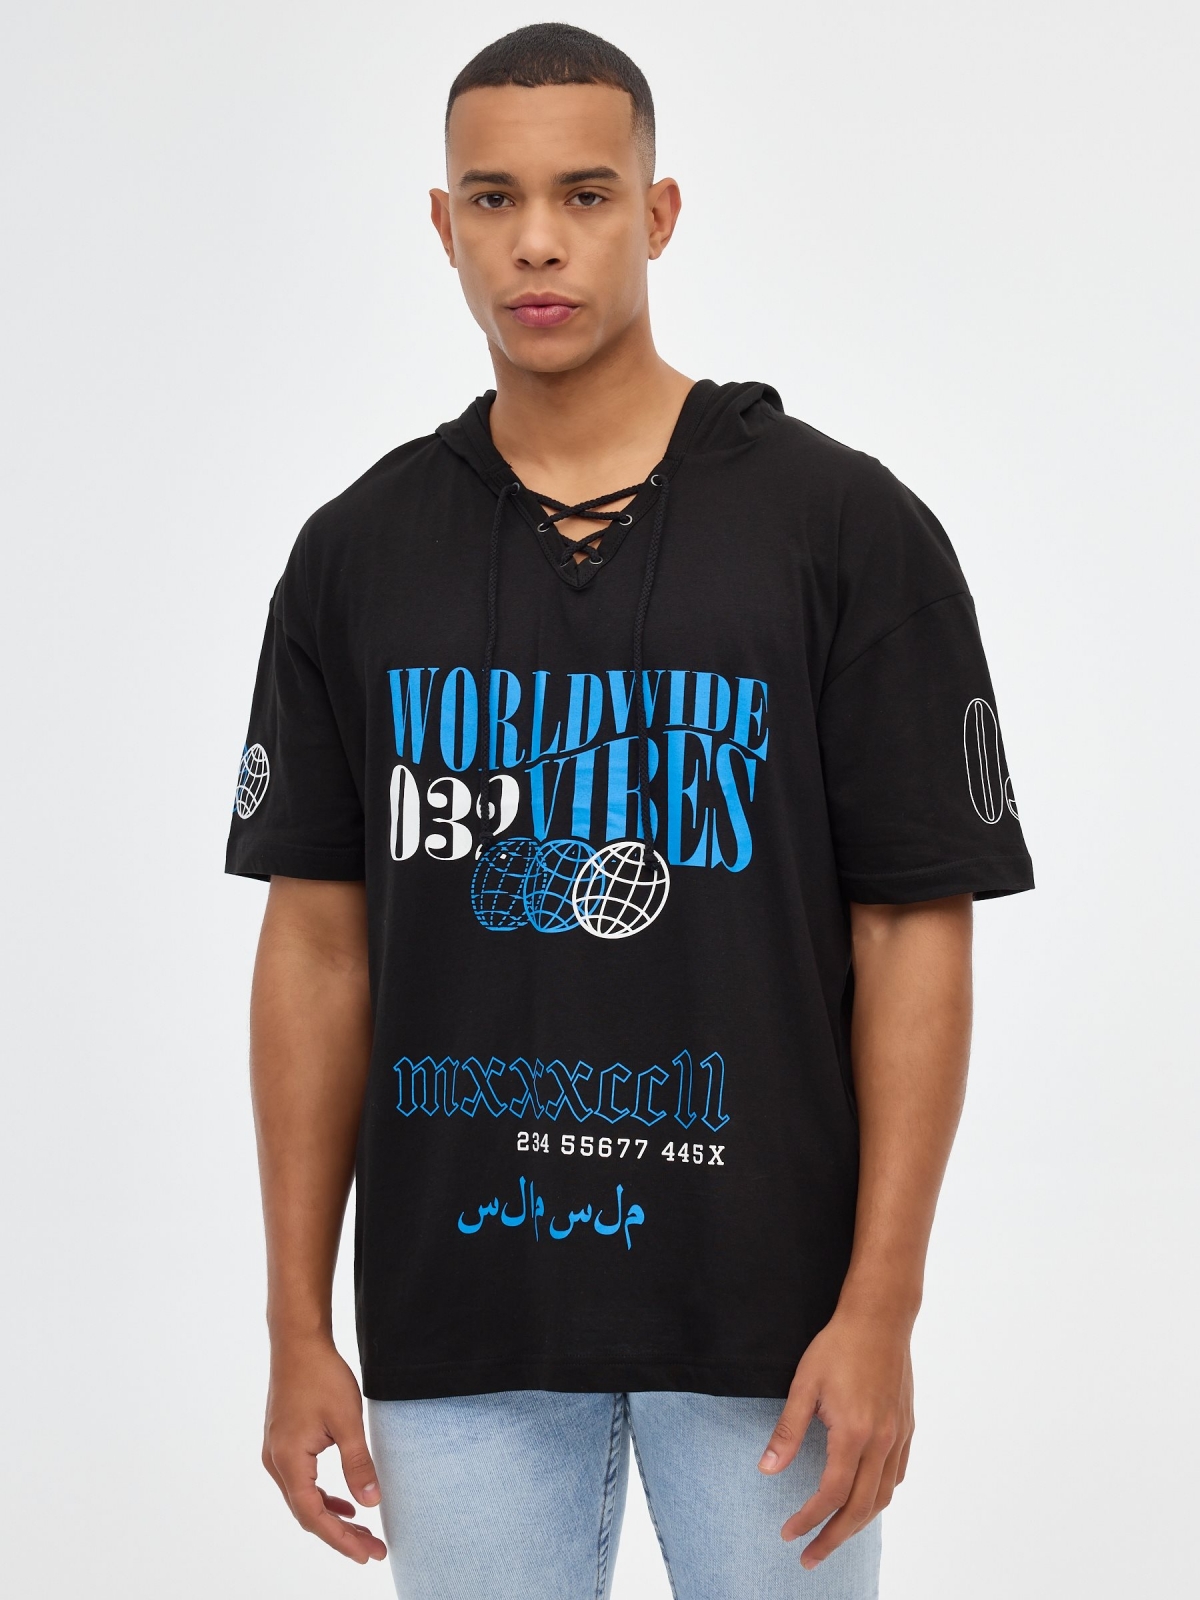 T-shirt mundial com capuz preto vista meia frontal